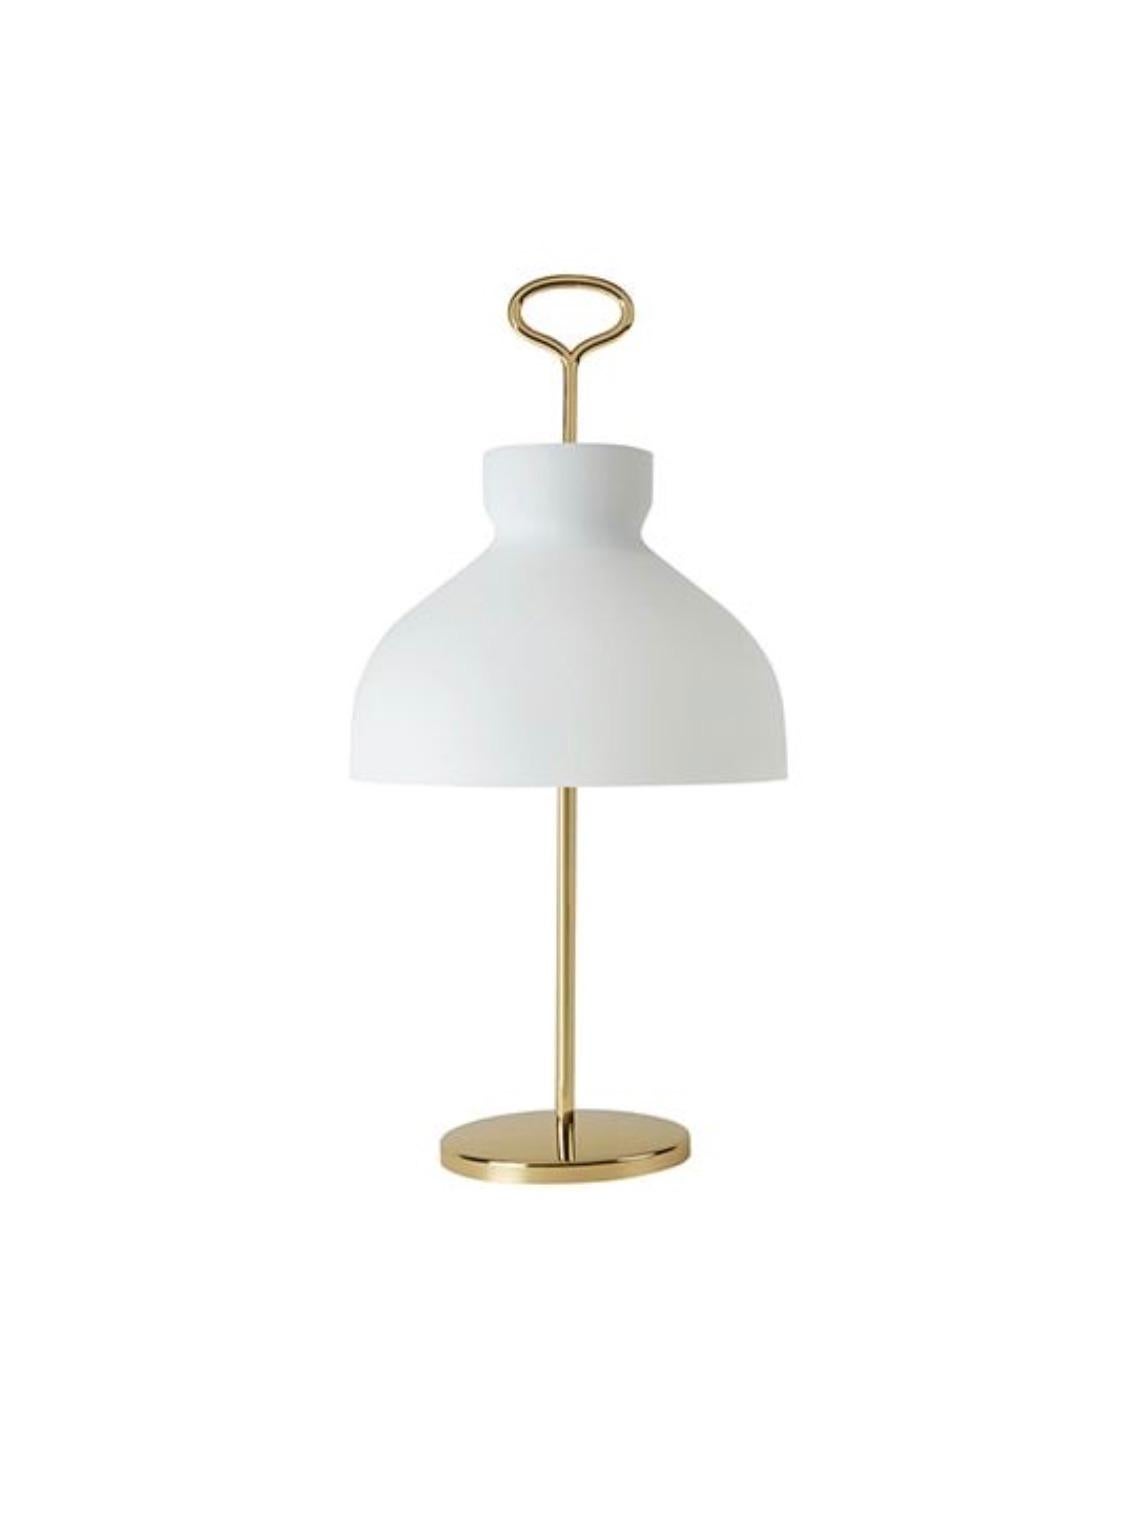 Italian Arenzano Table Lamp by Ignazio Gardella